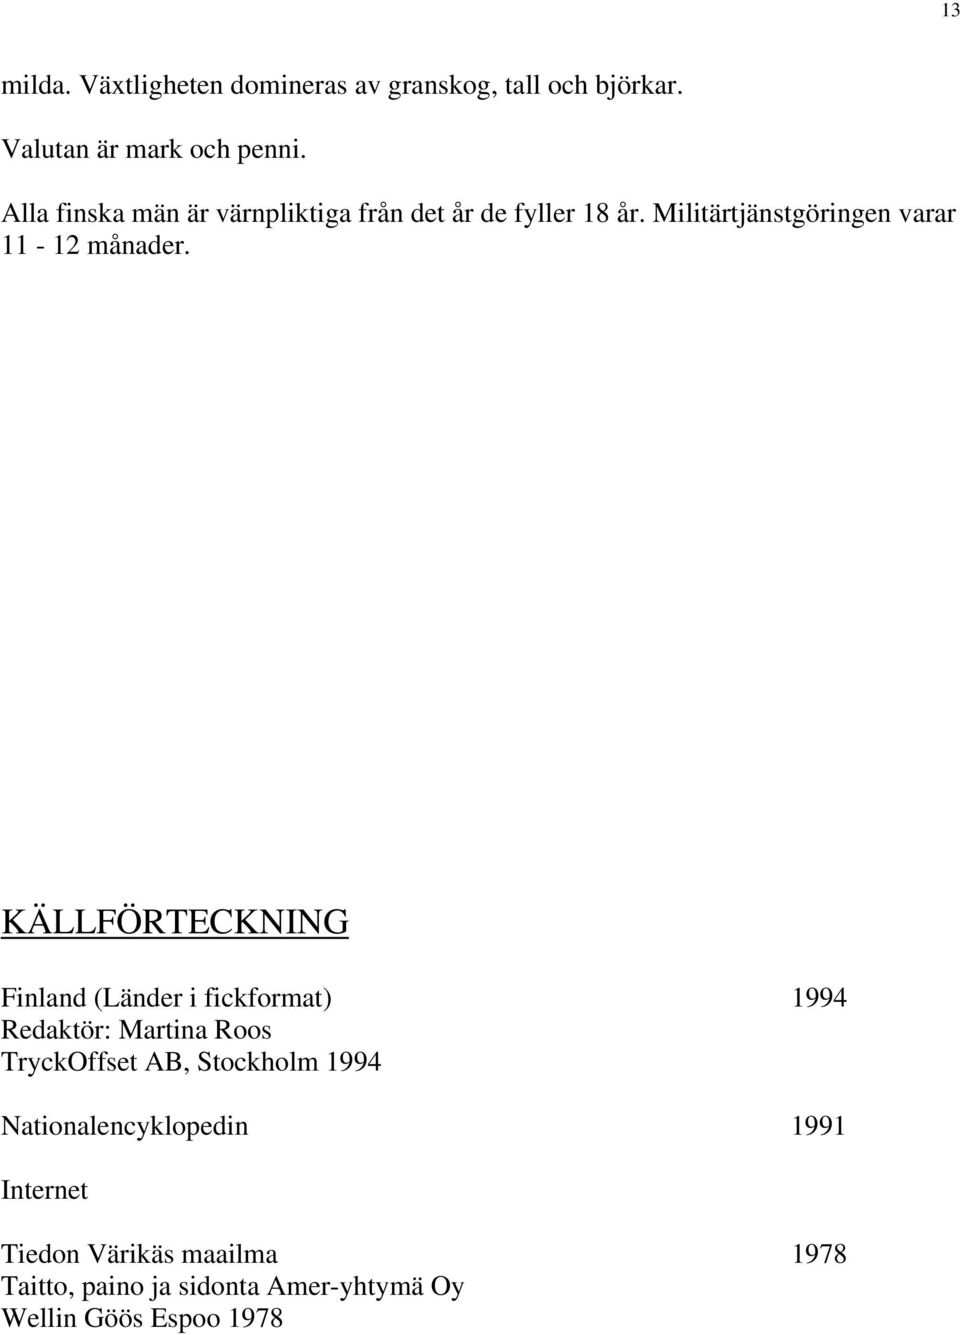 KÄLLFÖRTECKNING Finland (Länder i fickformat) 1994 Redaktör: Martina Roos TryckOffset AB, Stockholm 1994